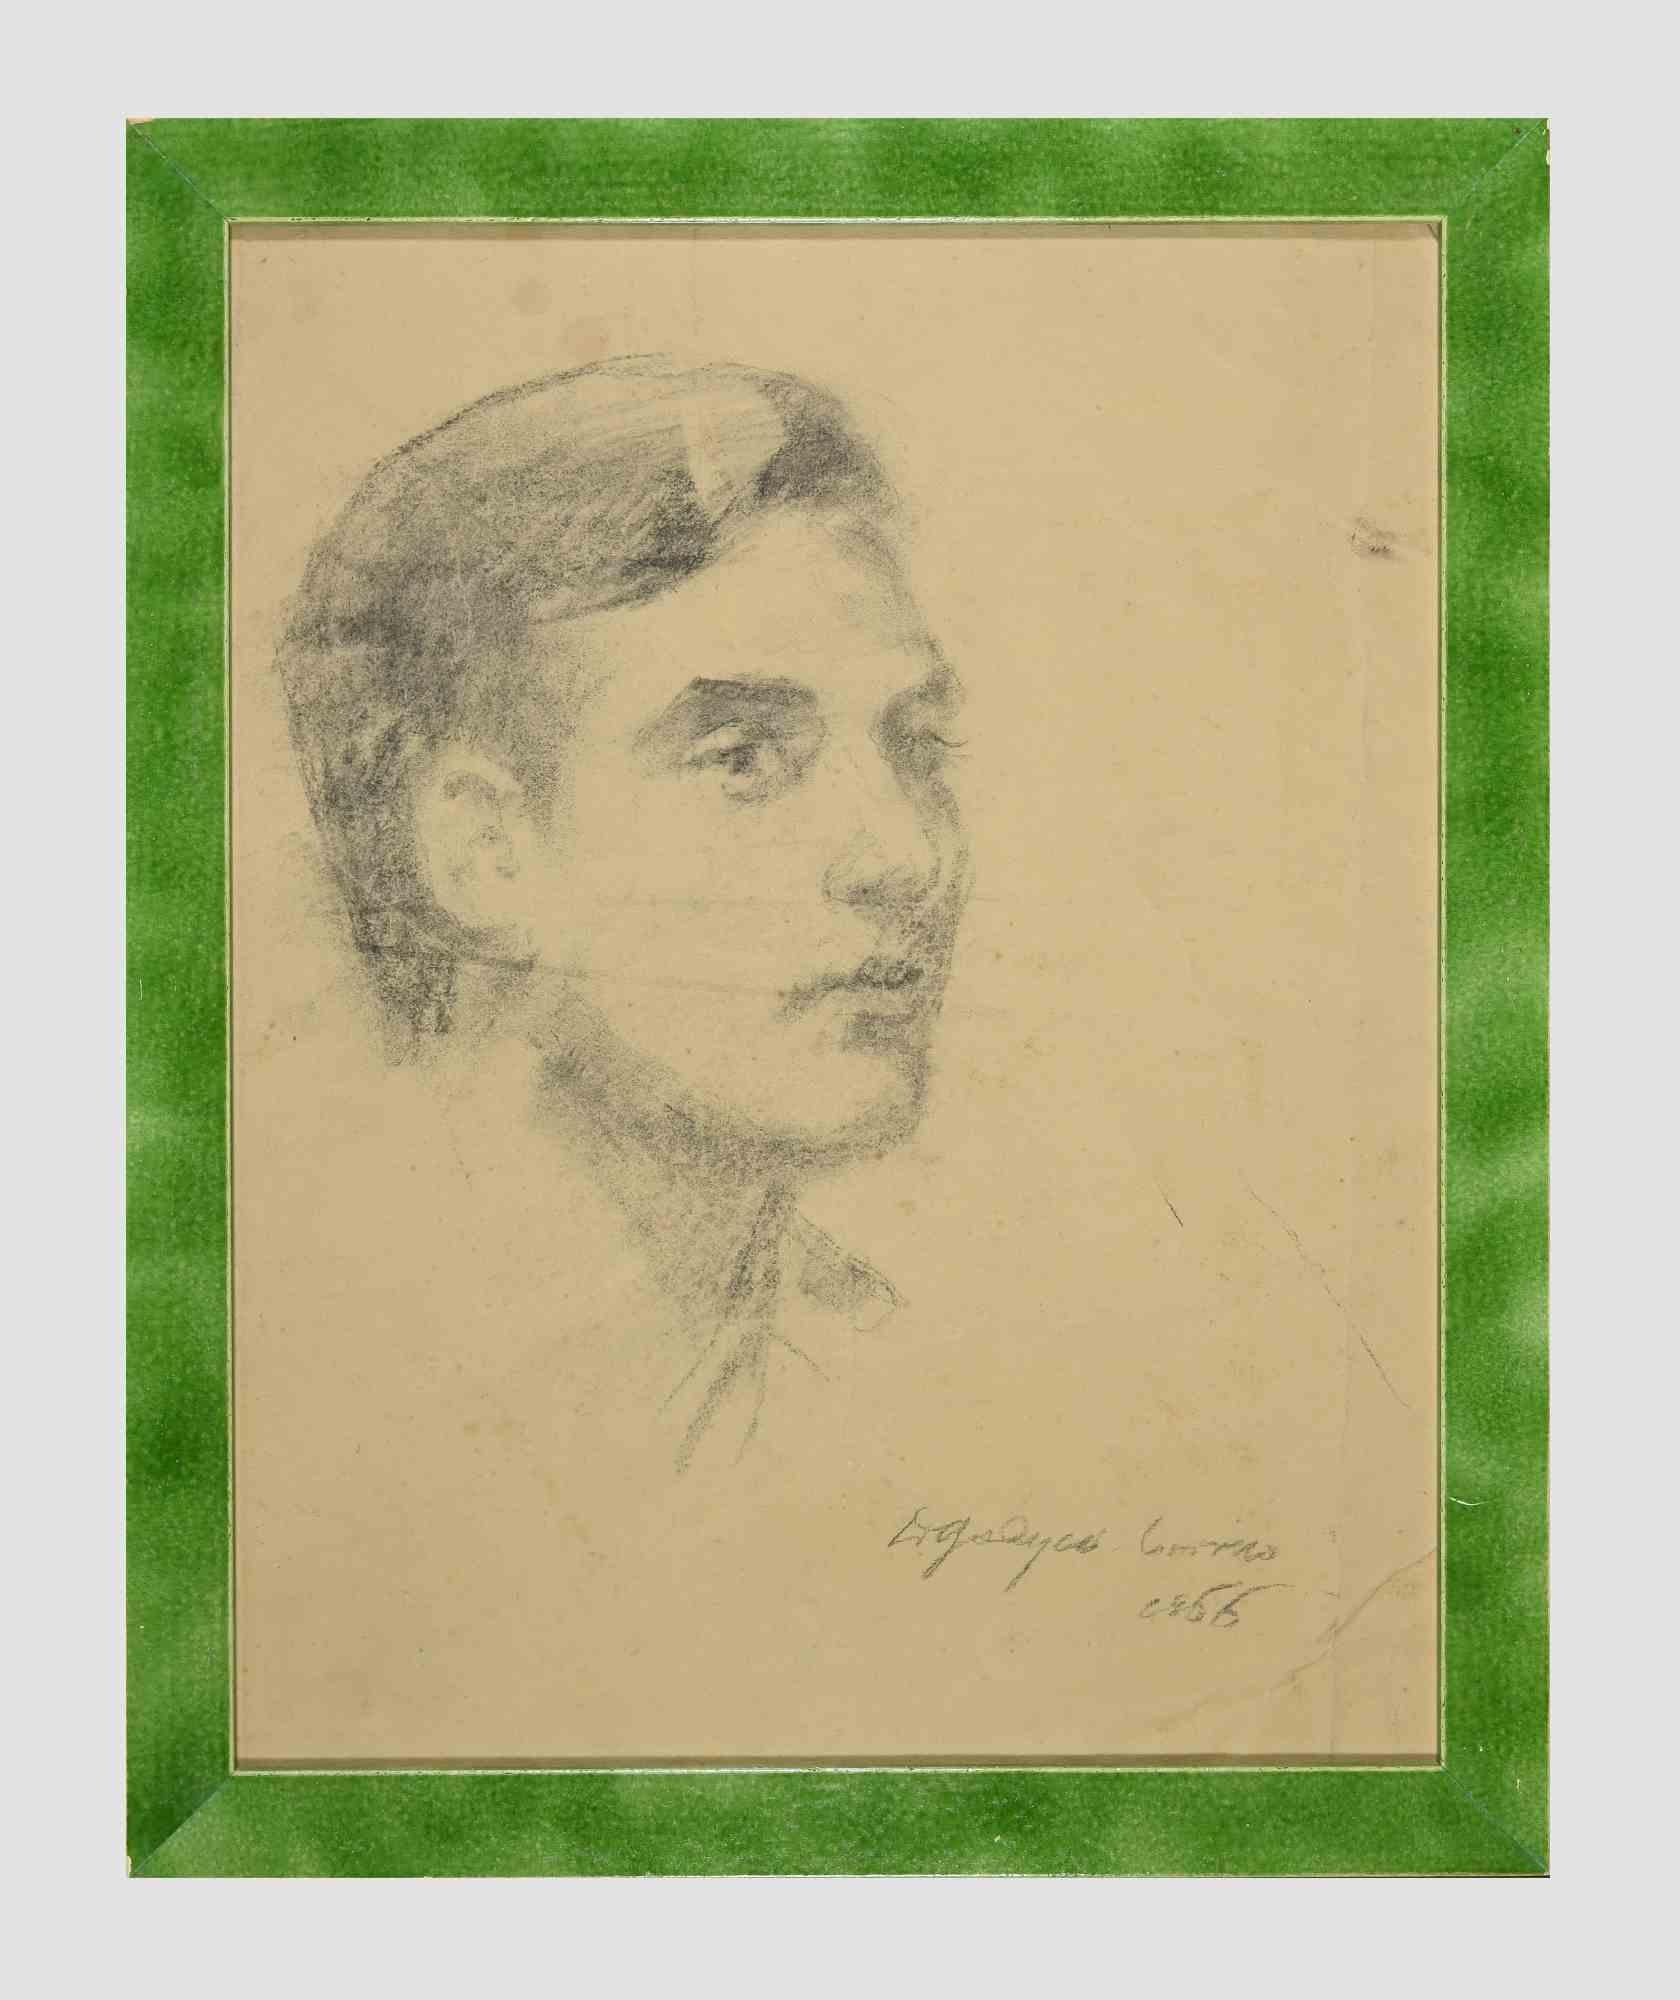 Portrait d'un homme est un dessin original au fusain sur papier réalisé par Dimitri Godycki Cwirko (1901-1987) en 1966.

L'état de conservation est bon et vieilli, avec quelques taches et quelques légers plis sur le papier. 

Comprend un cadre en